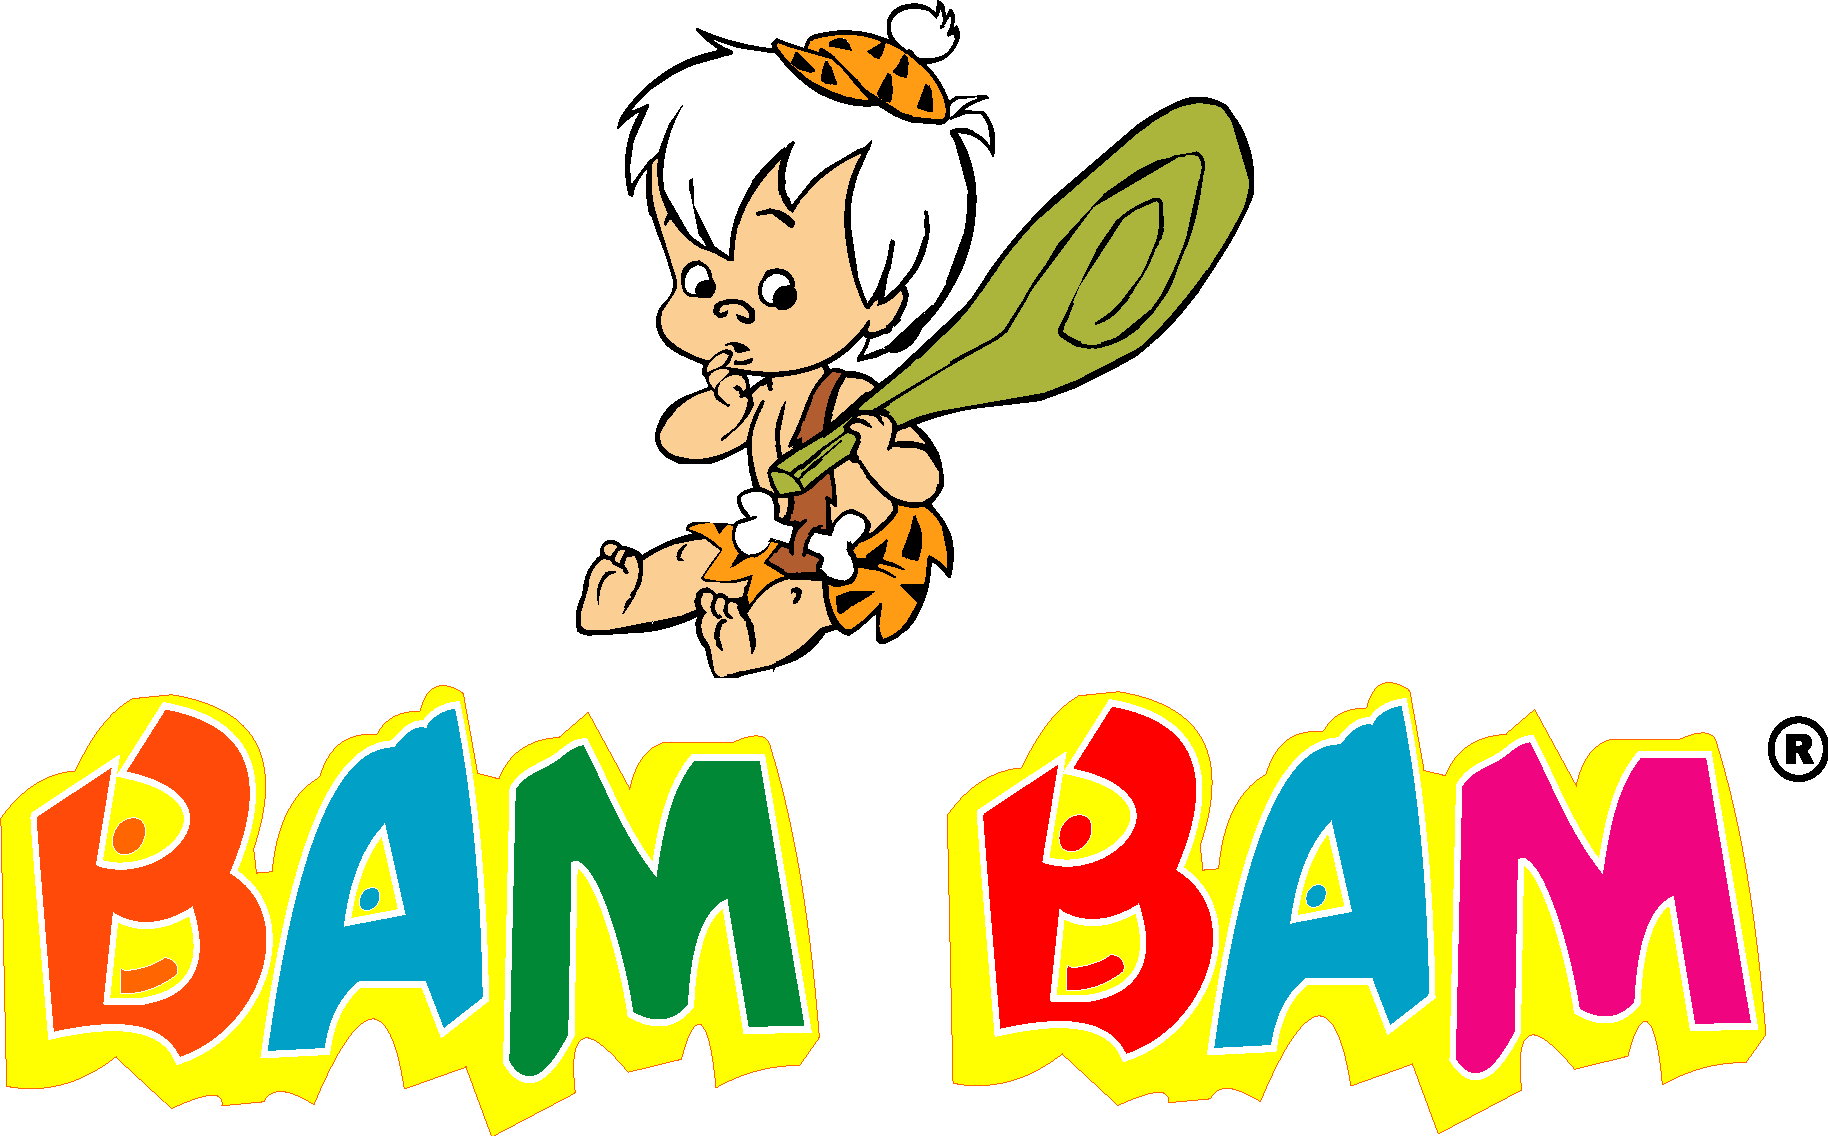 Bam bam на русском. БАМ БАМ логотип. Bam Bam logo. Bam Bam Bam Бэмби. Bam Bam вторая часть.